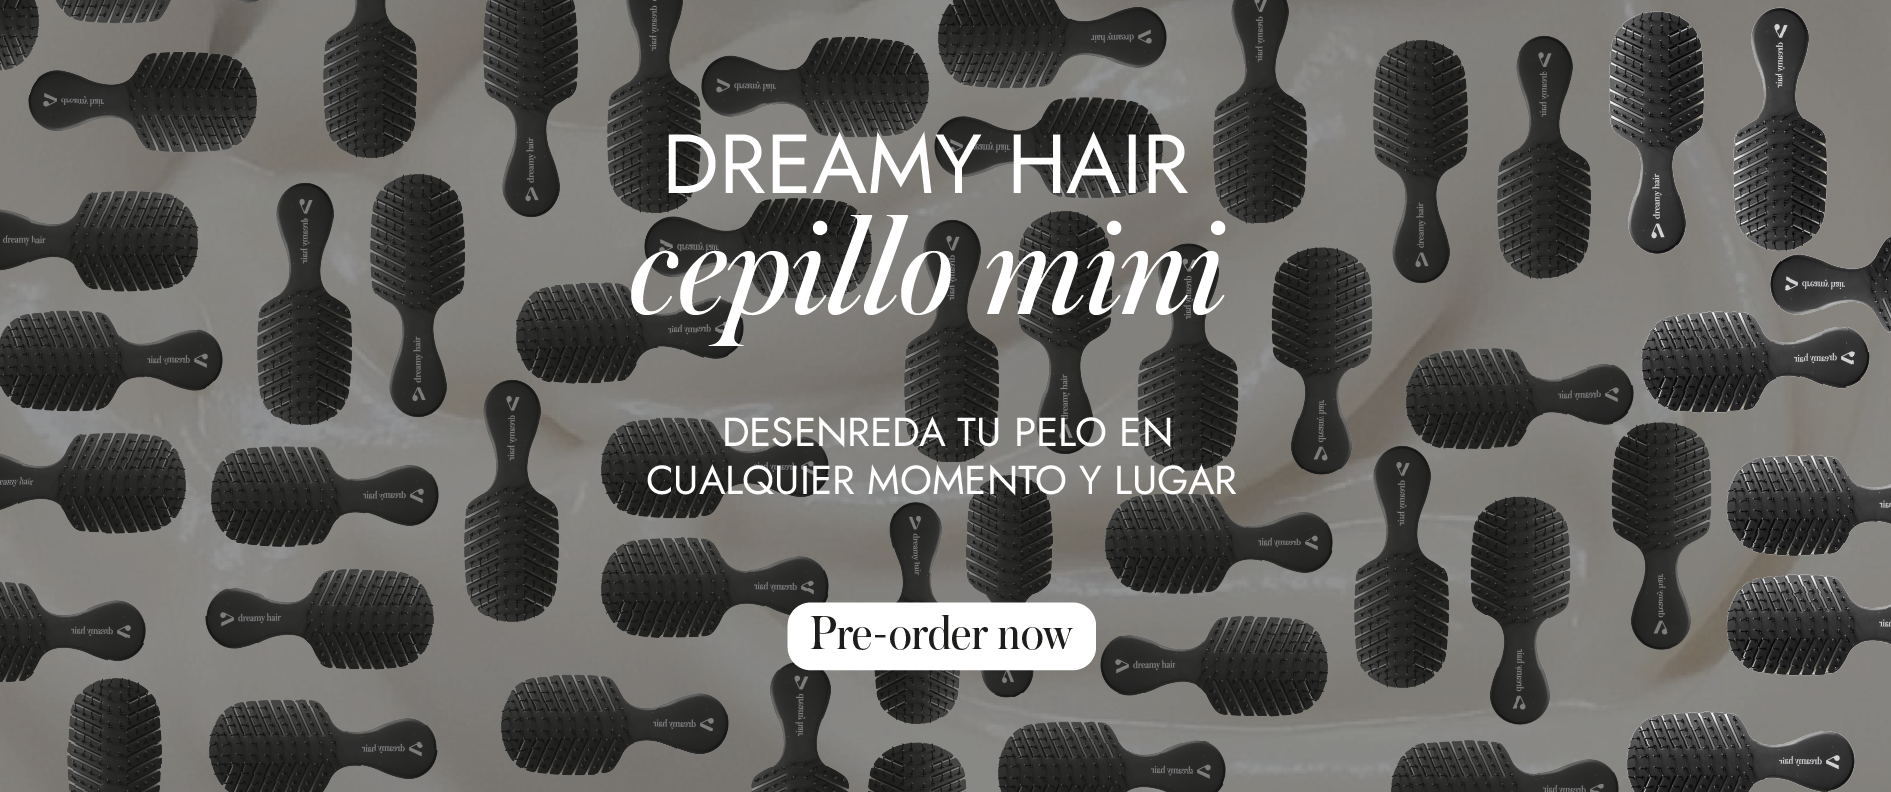 https://amaria.com.co/producto/dreamy-hair-cepillo-mini/